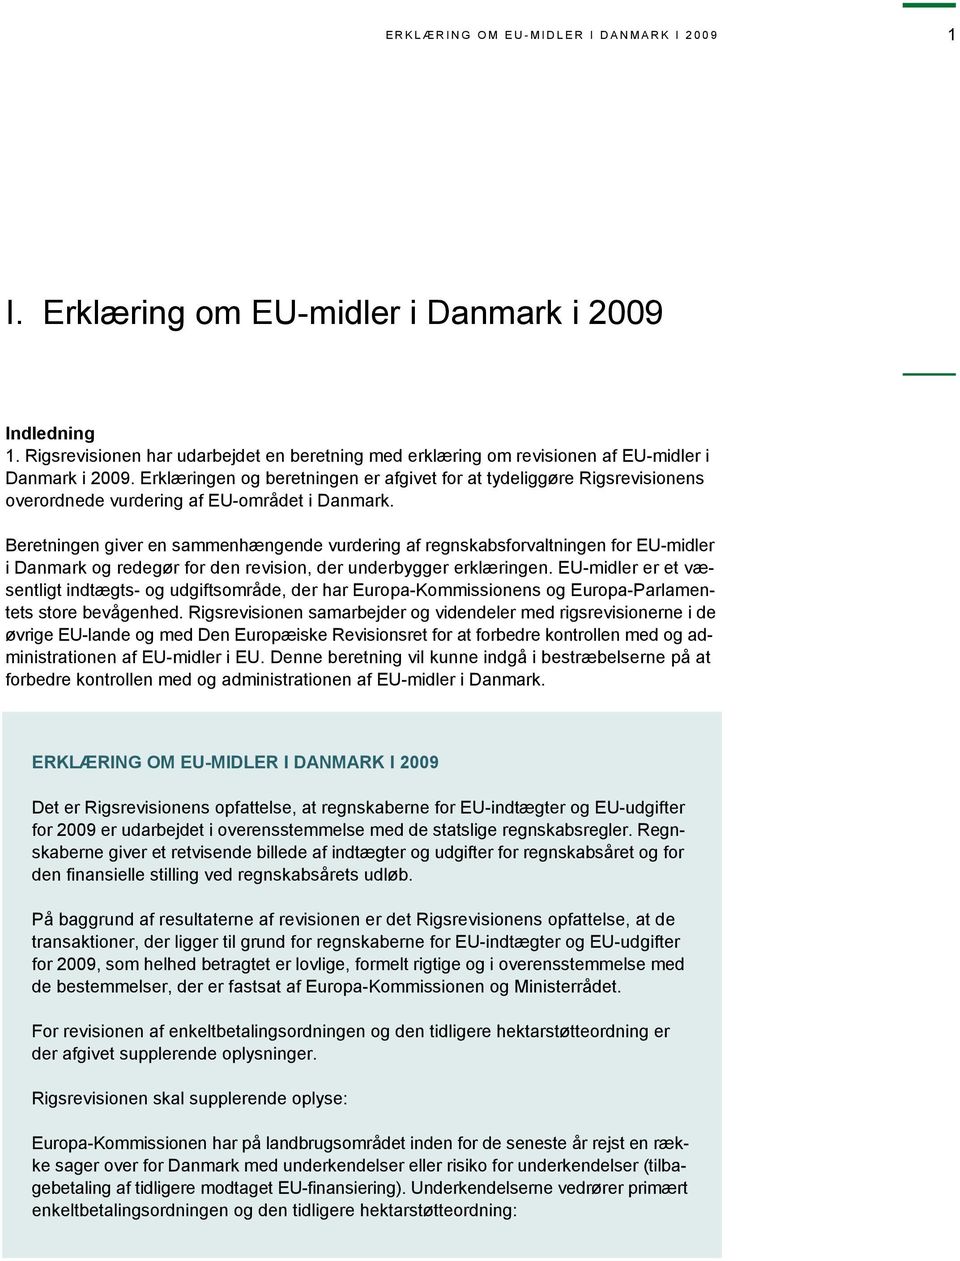 Erklæringen og beretningen er afgivet for at tydeliggøre Rigsrevisionens overordnede vurdering af EU-området i Danmark.